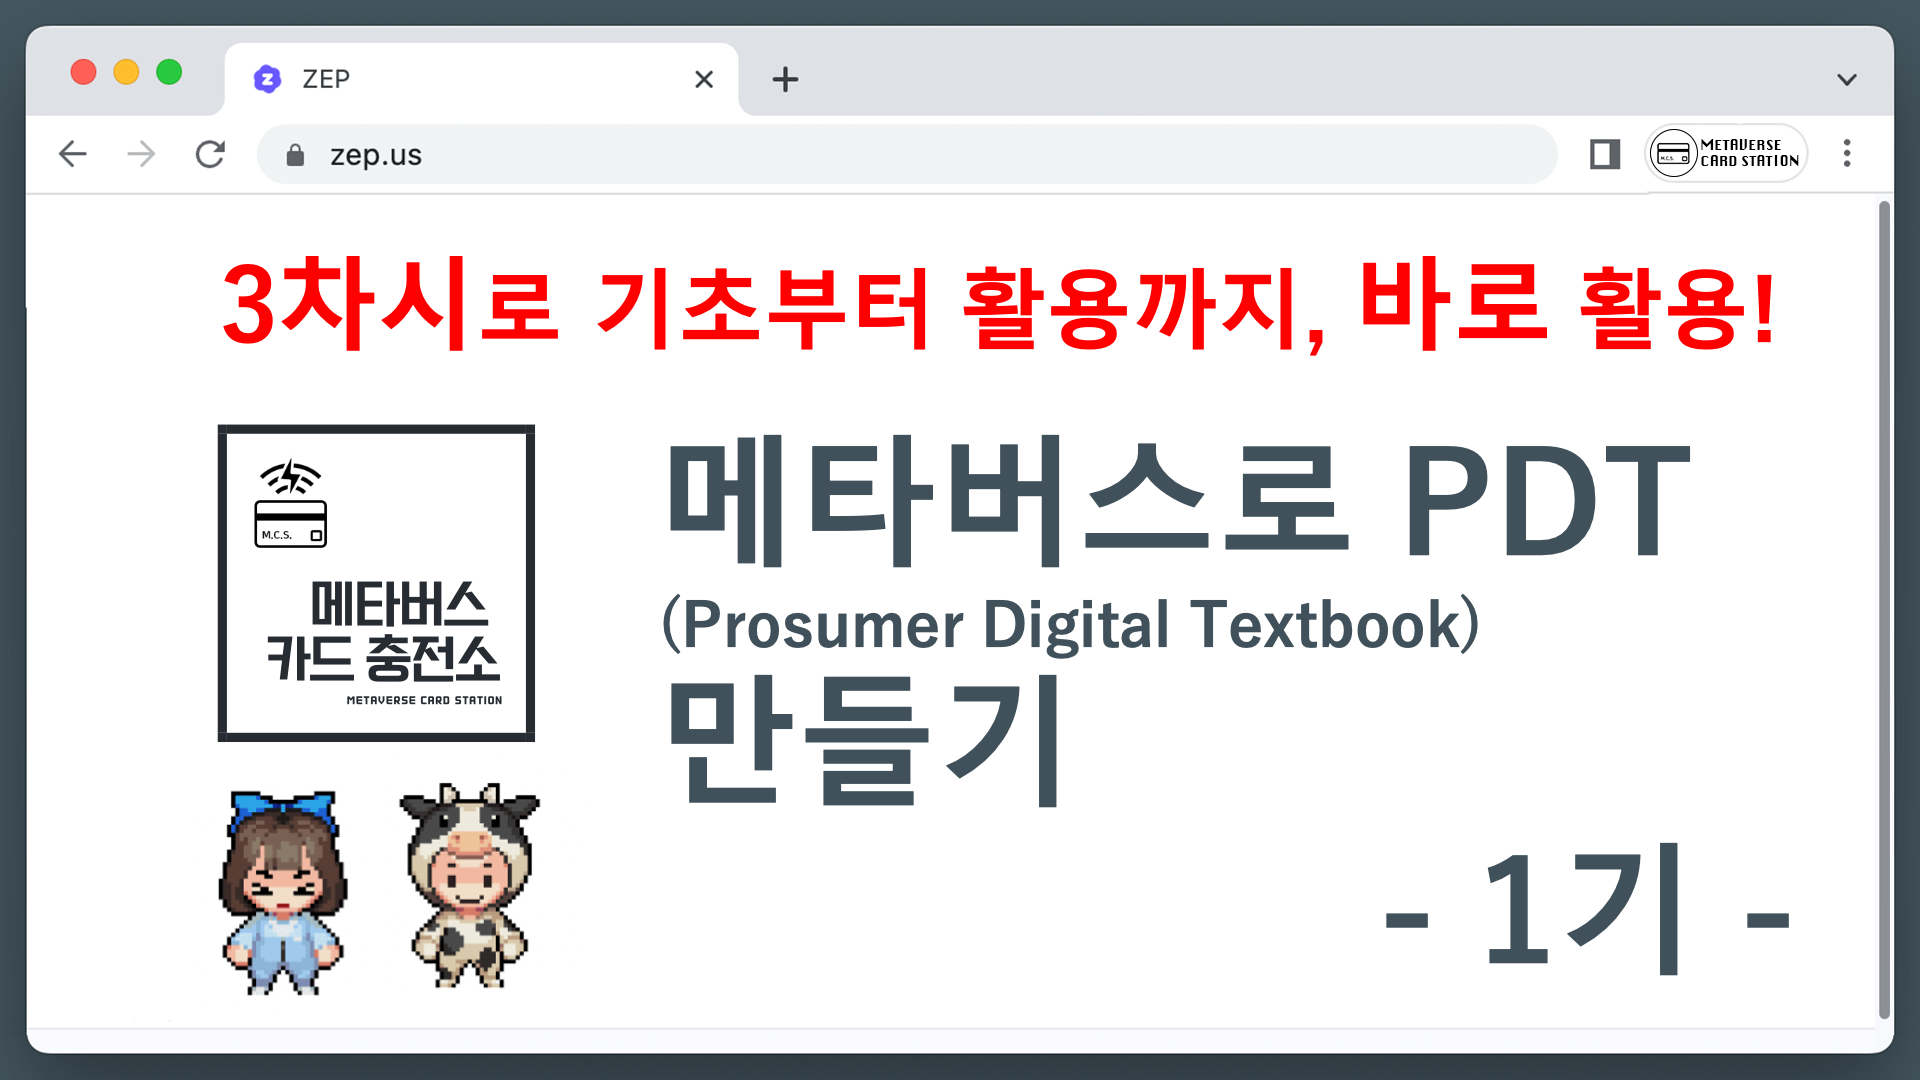 메타버스로 PDT(Prosumer Digital Textbook) 만들기 1기